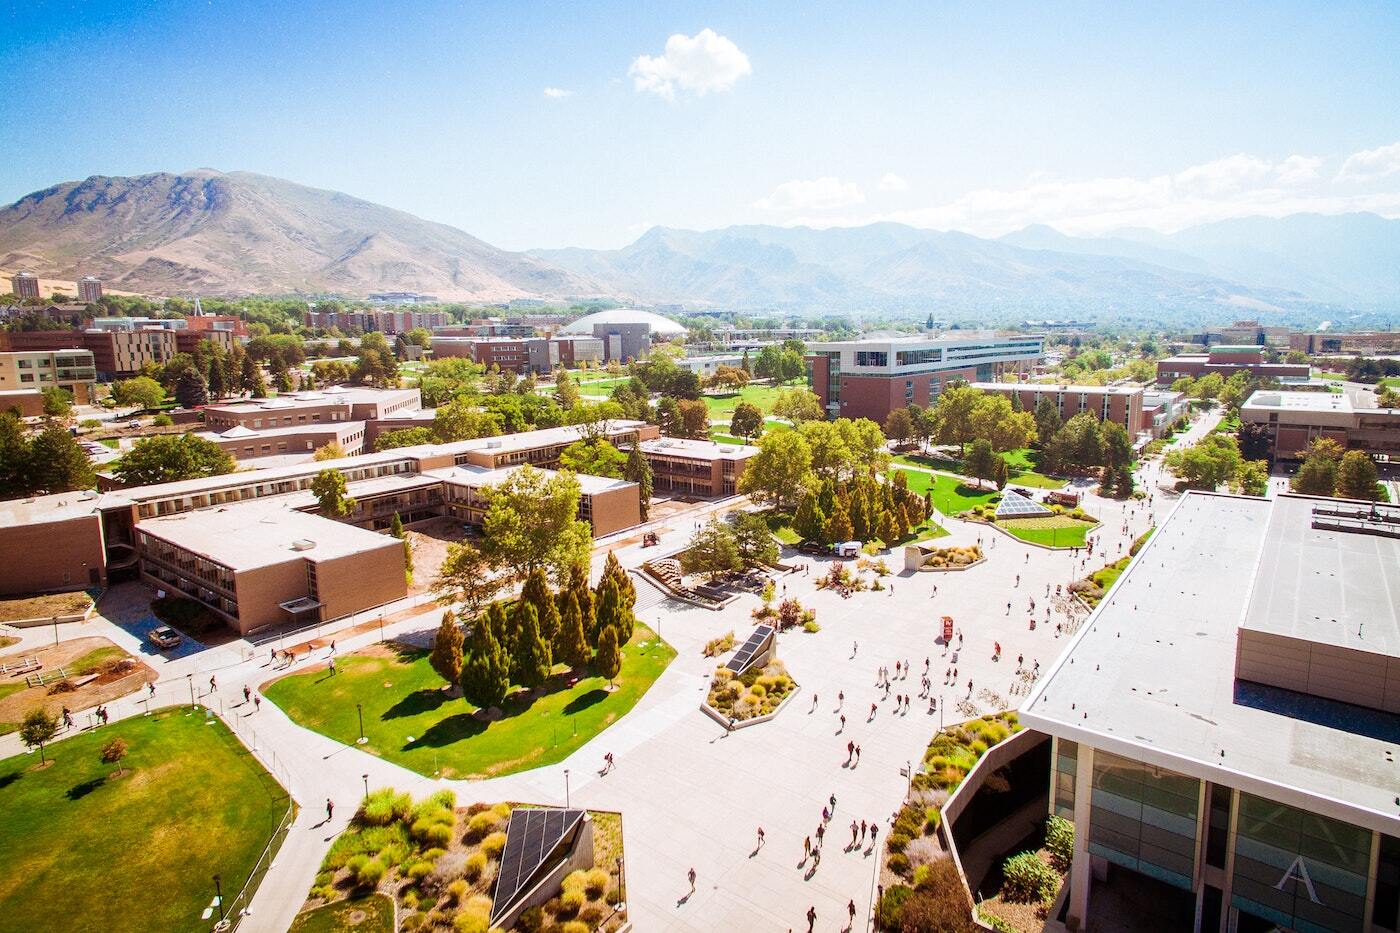 Aerial shot of the University of Utah